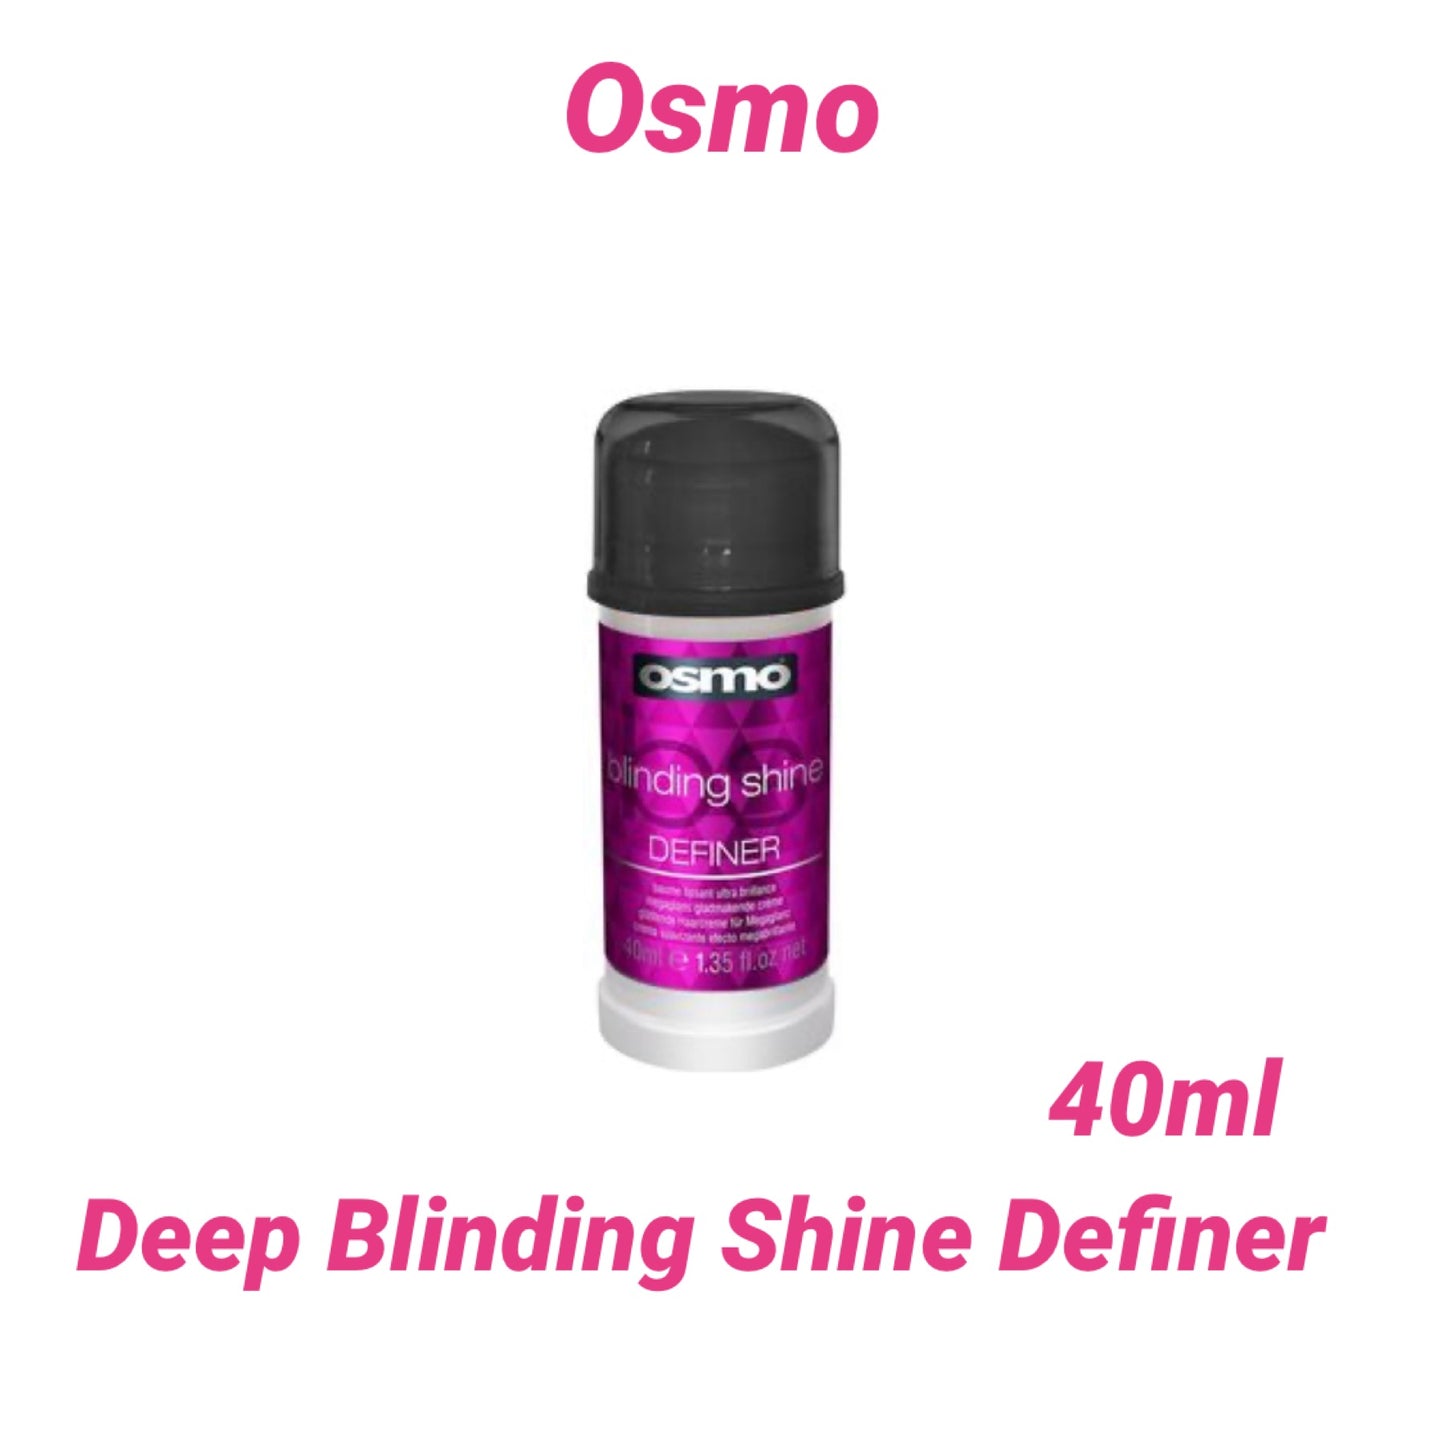 Osmo Blinding Shine Definer 40ml